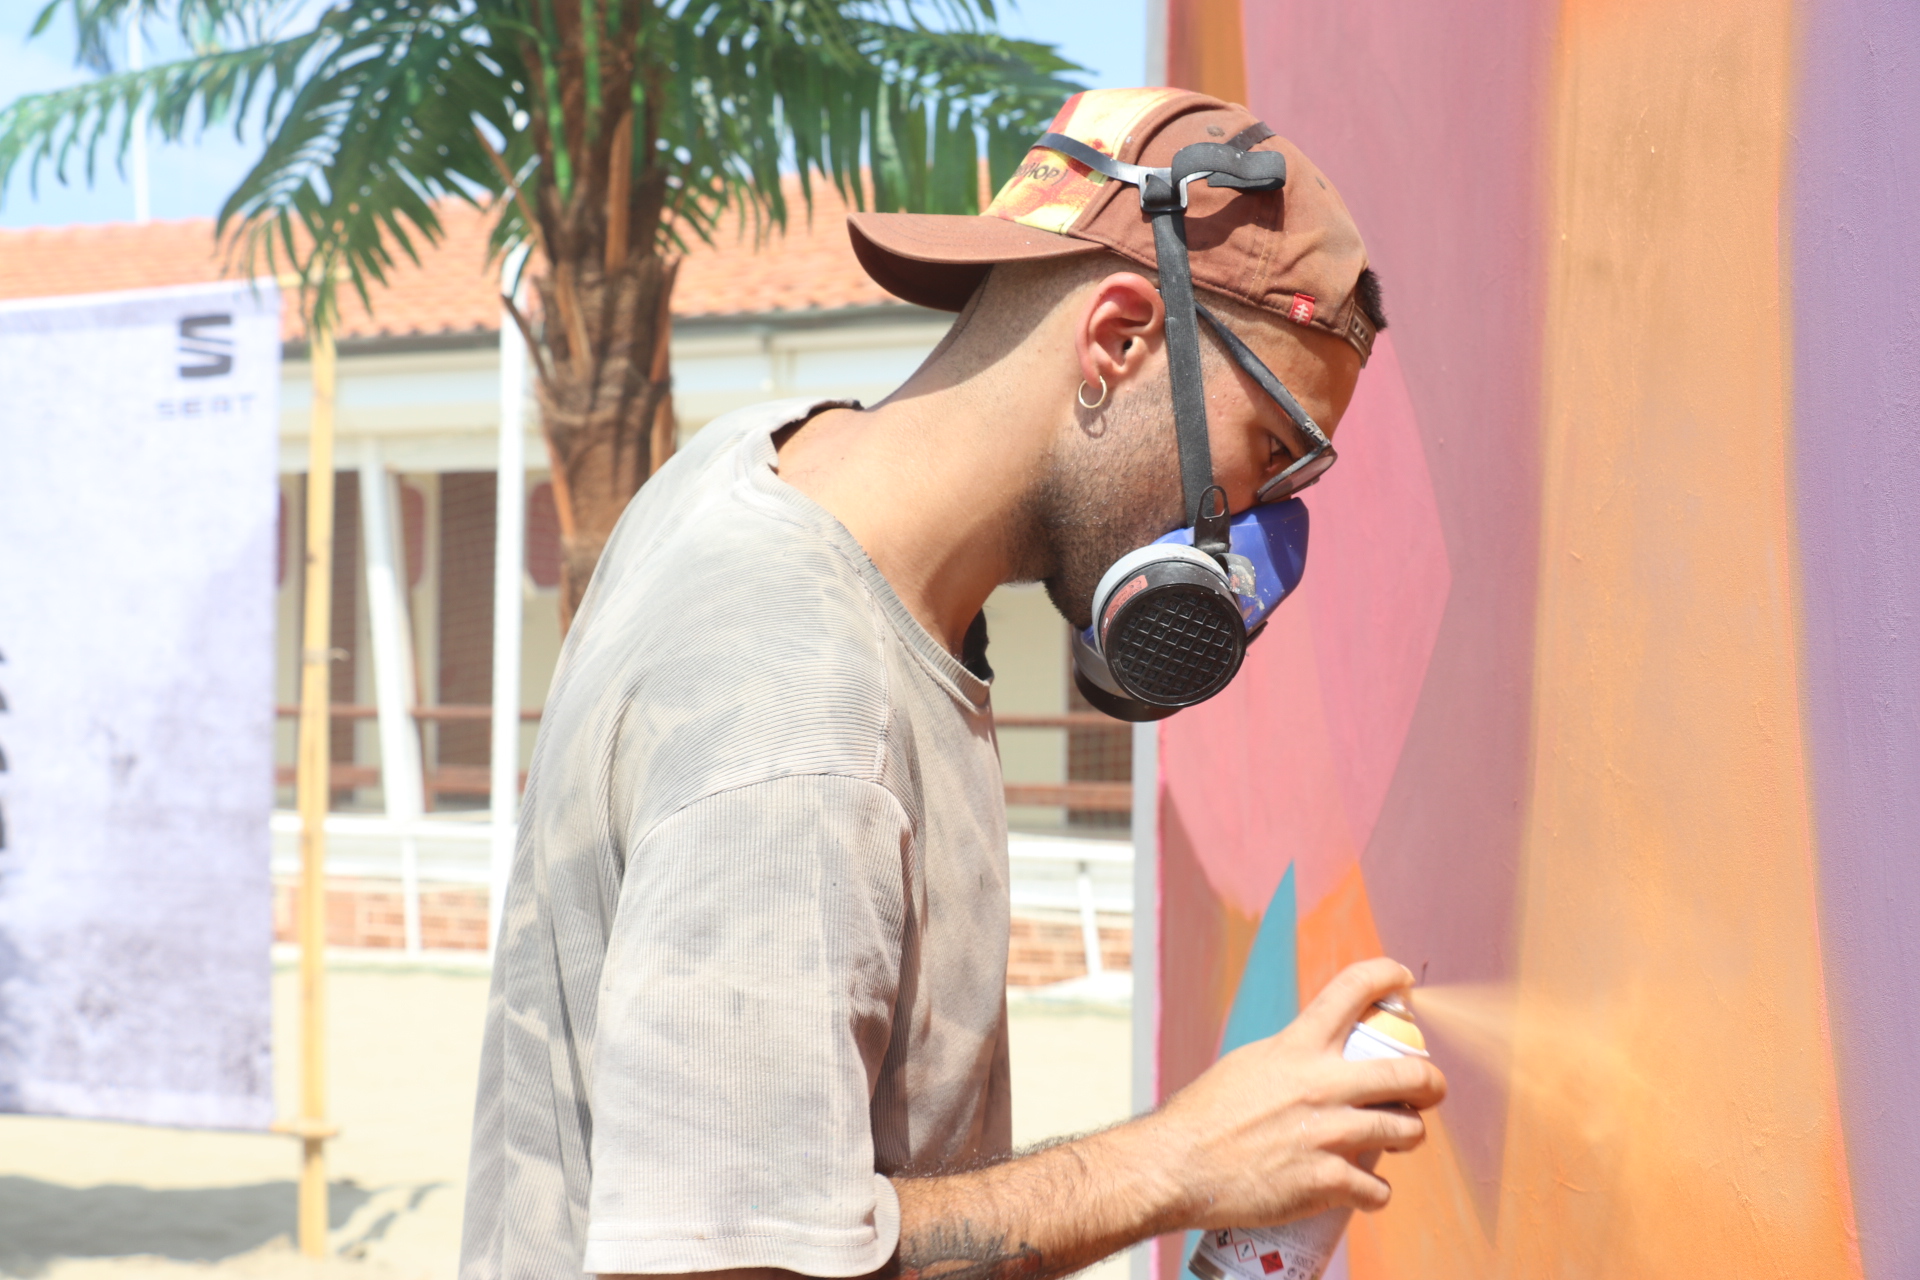 street art jam session Pisa